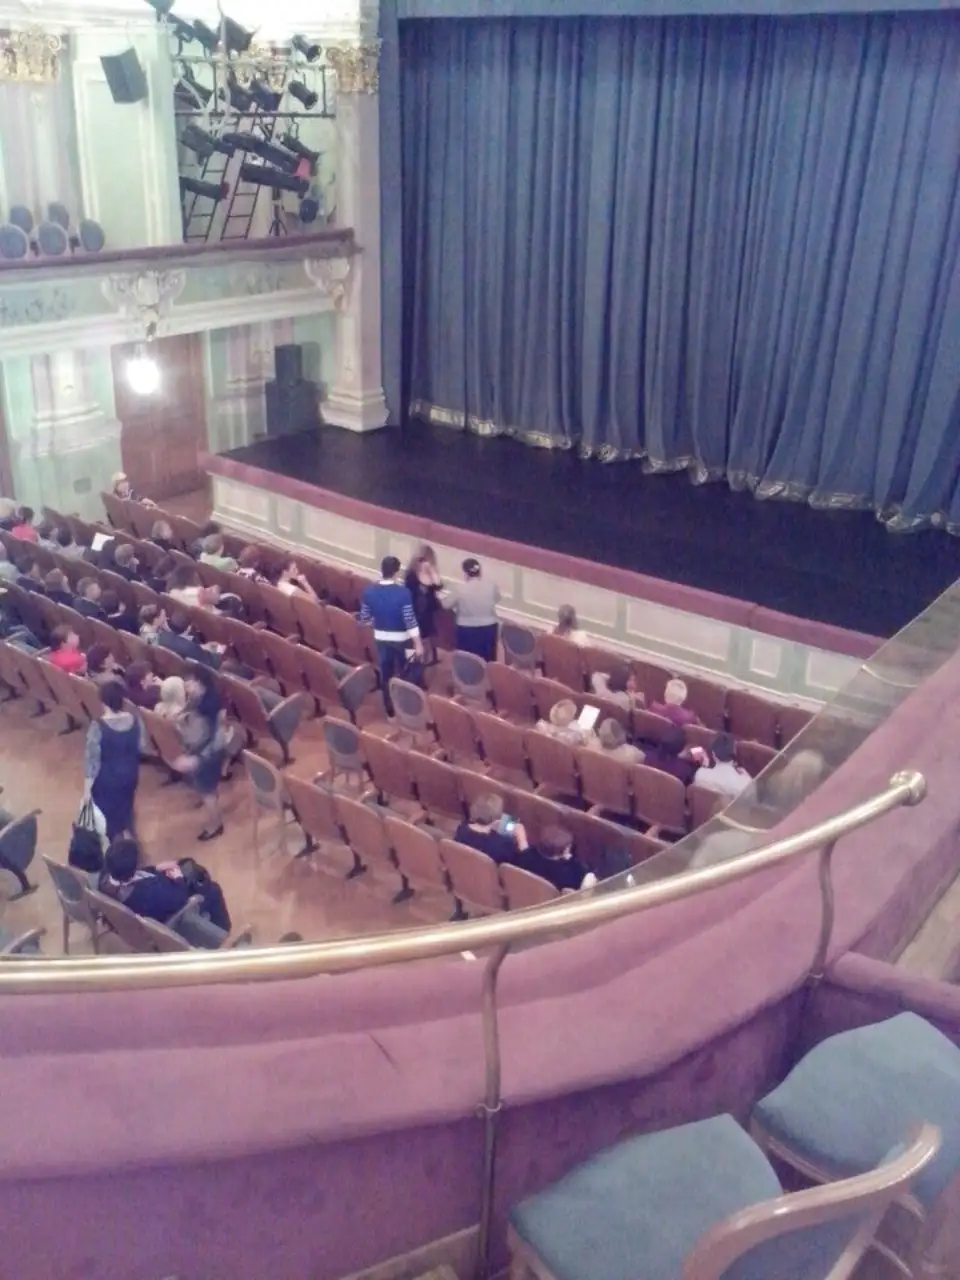 Театр комиссаржевской